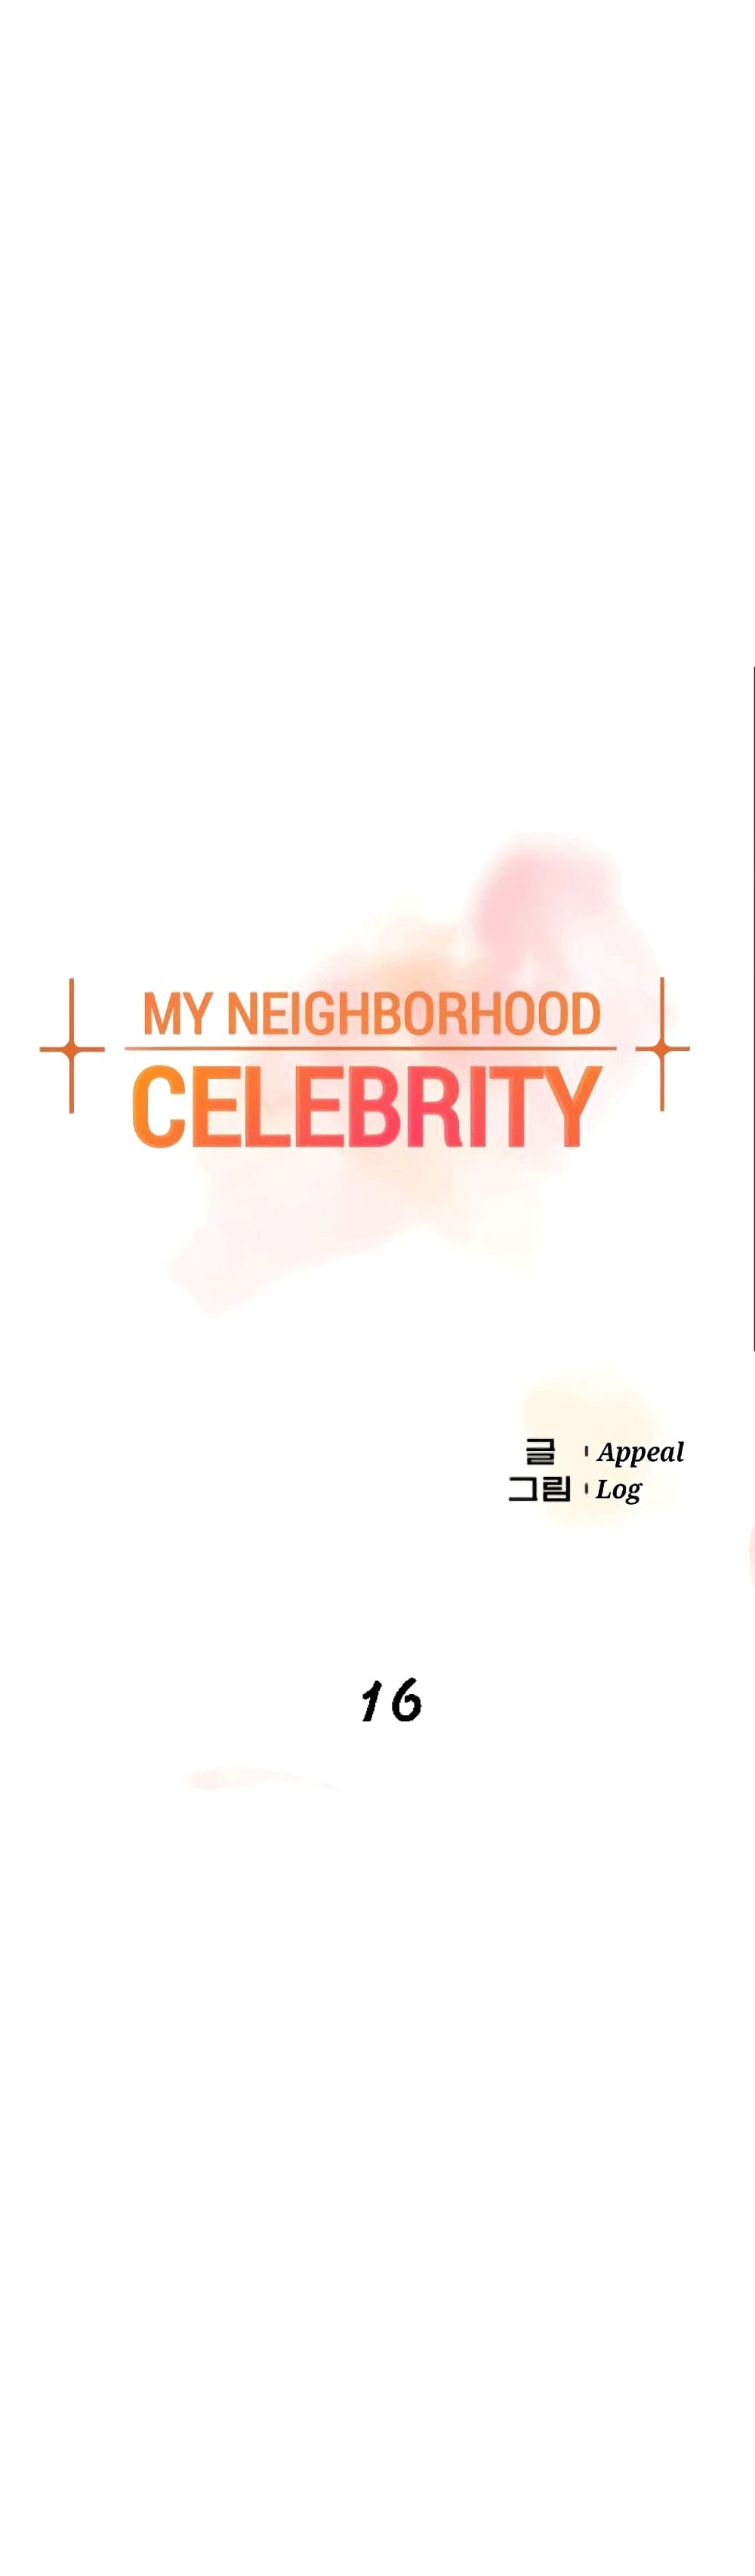 The Neighborhood Celebrity